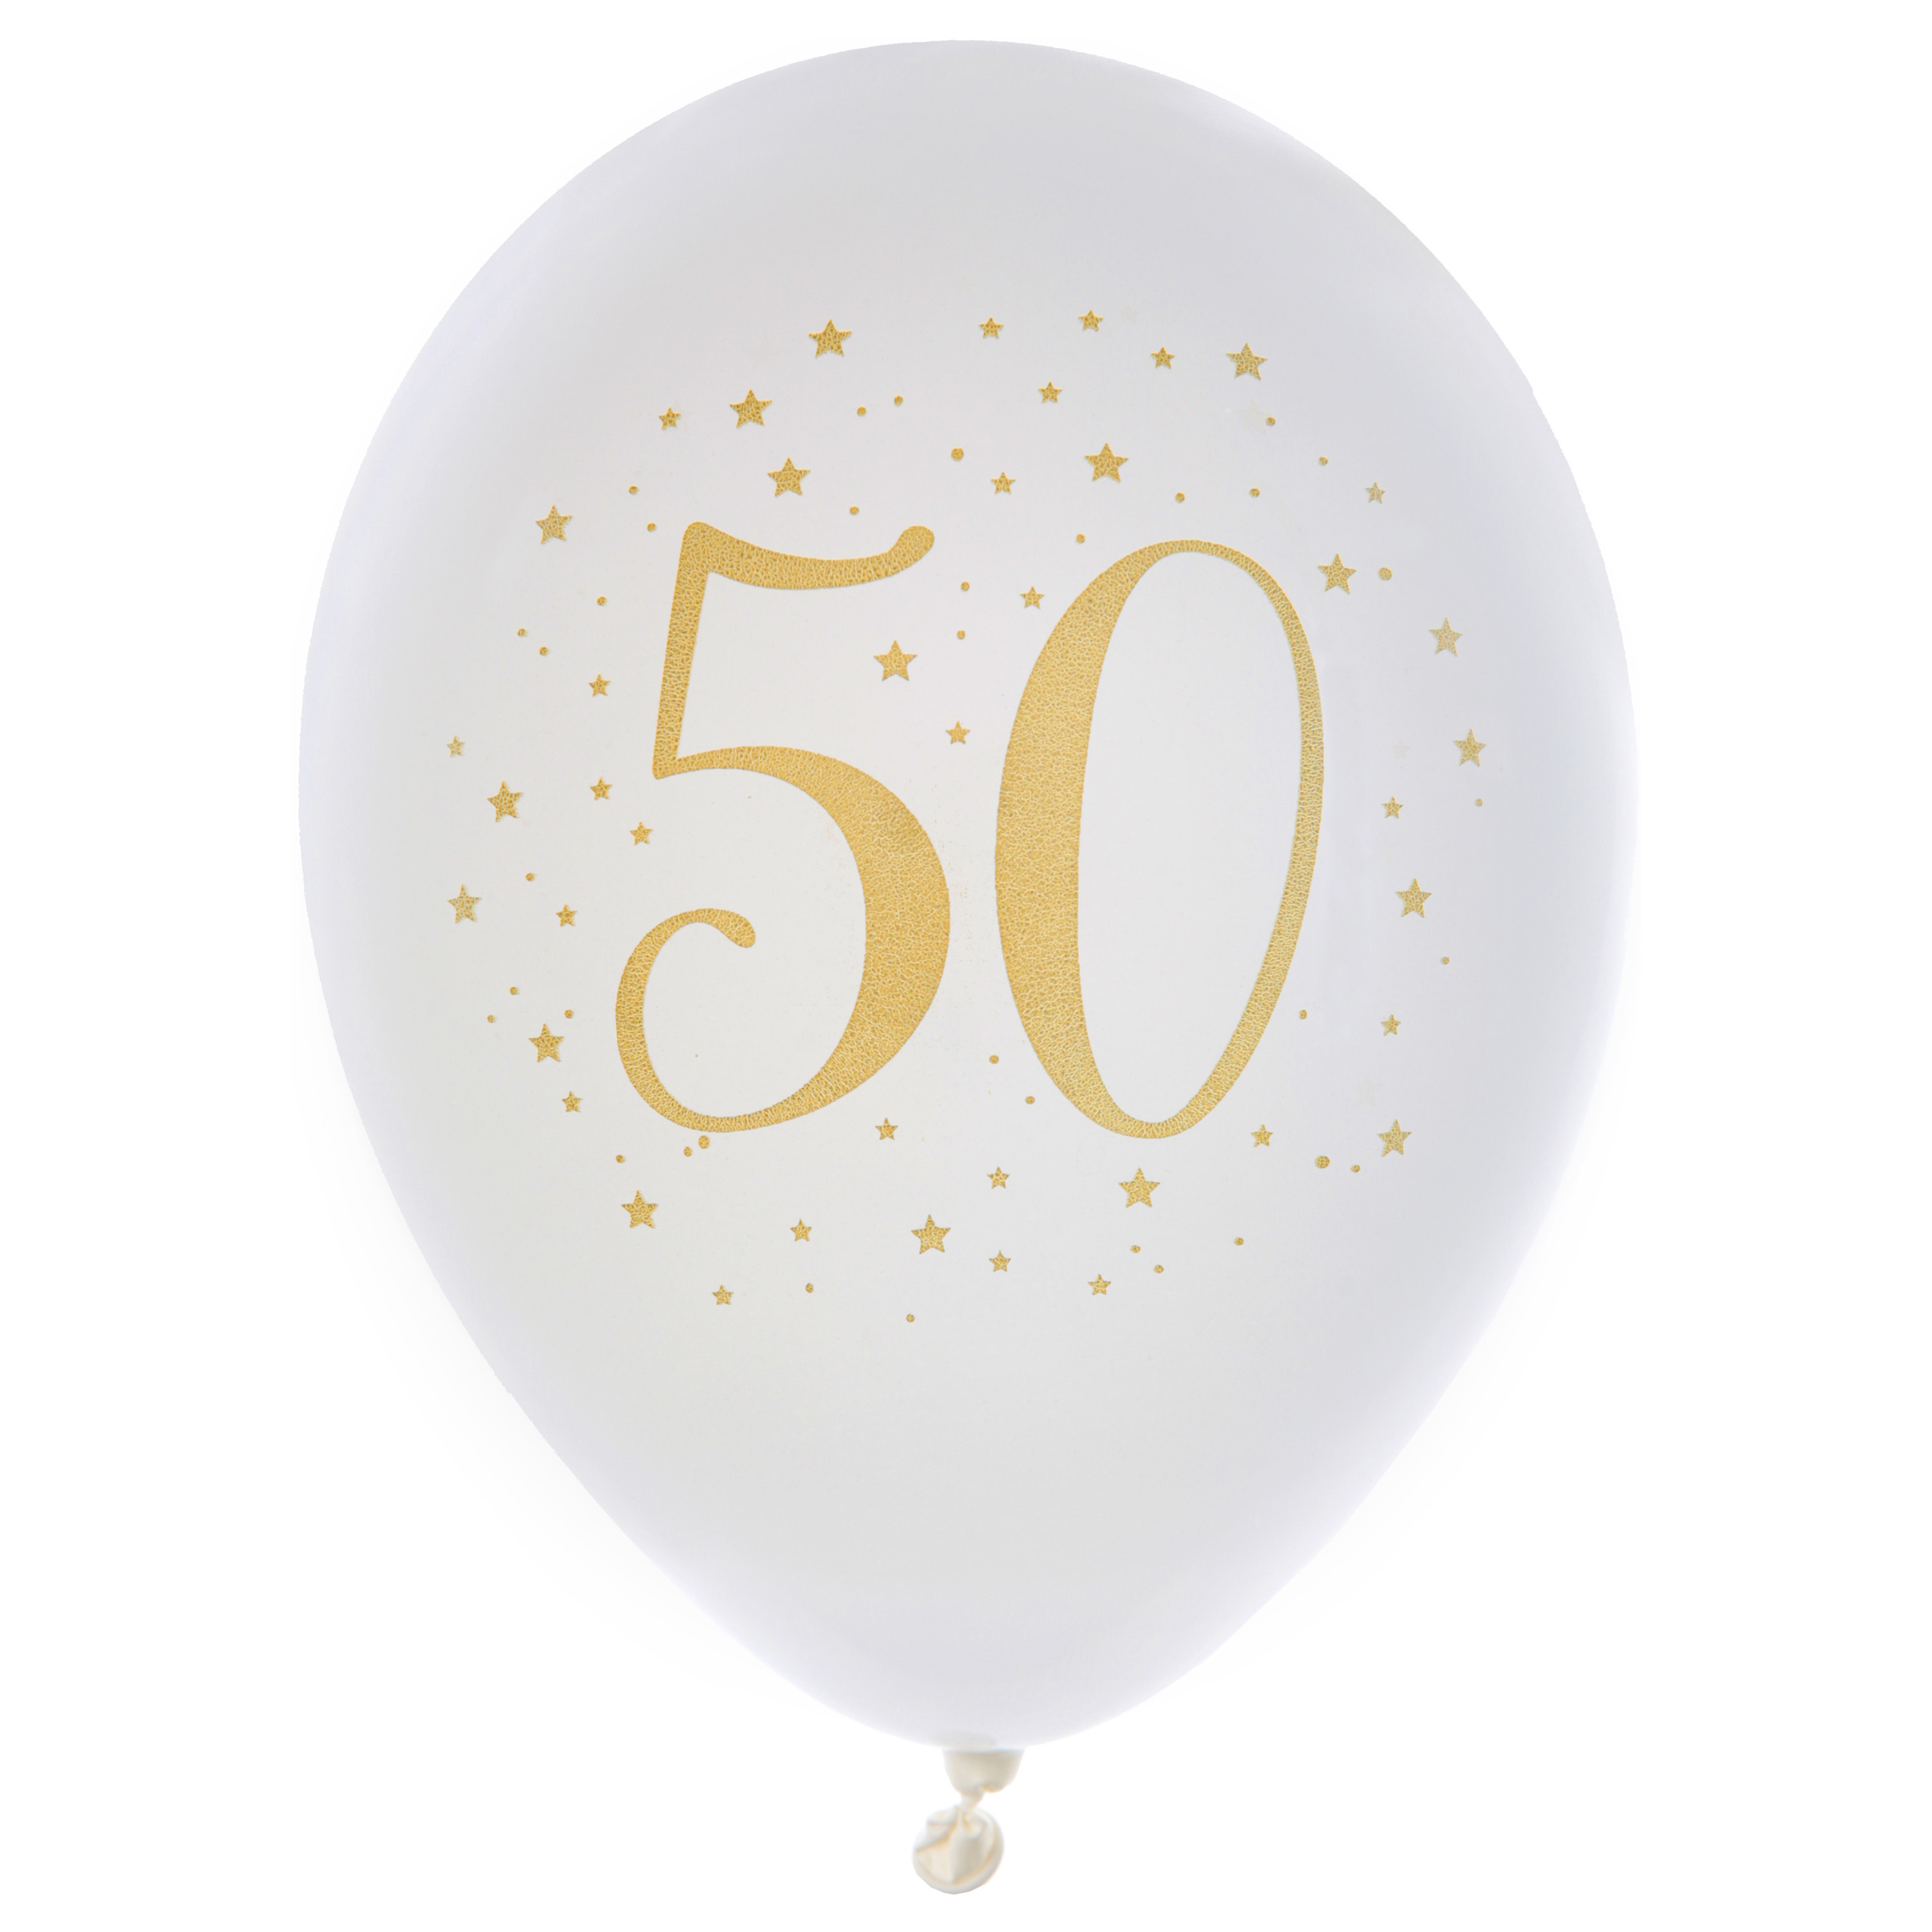 Verjaardag leeftijd ballonnen 50 jaar - 8x - wit/goud - 23 cm - Abraham/Sarah feestartikelen